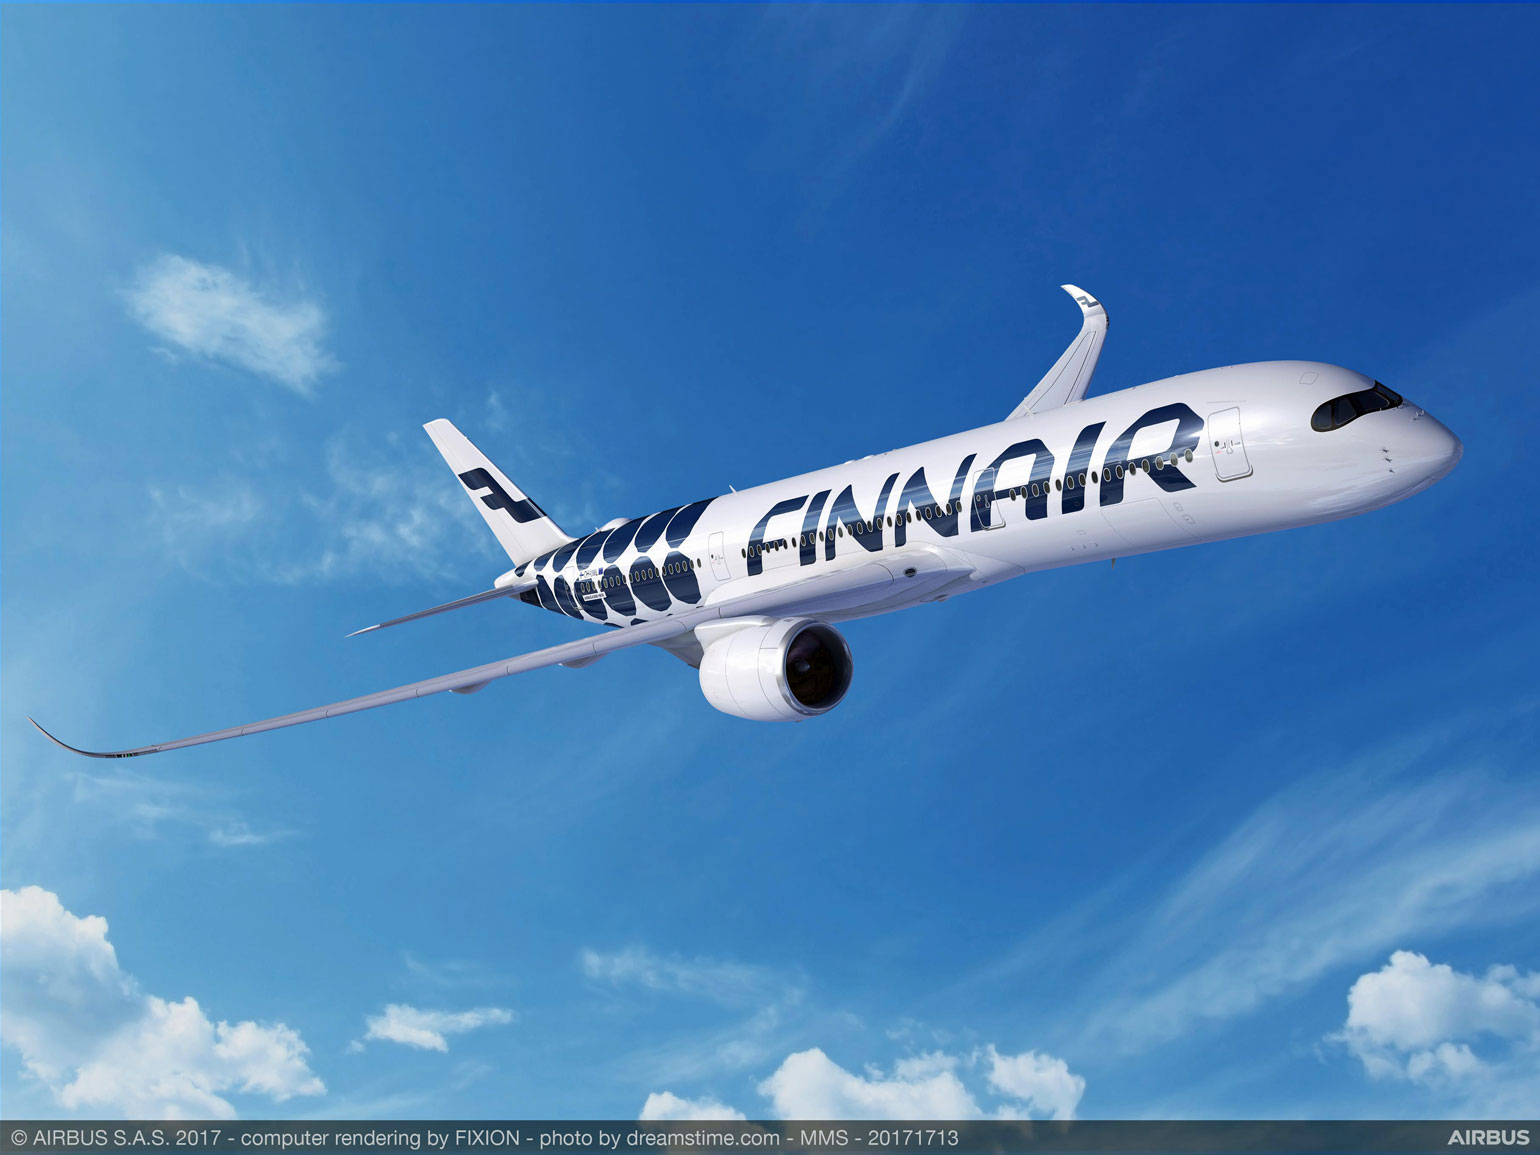 Anreise nach Finnland mit dem Flieger der Finnair